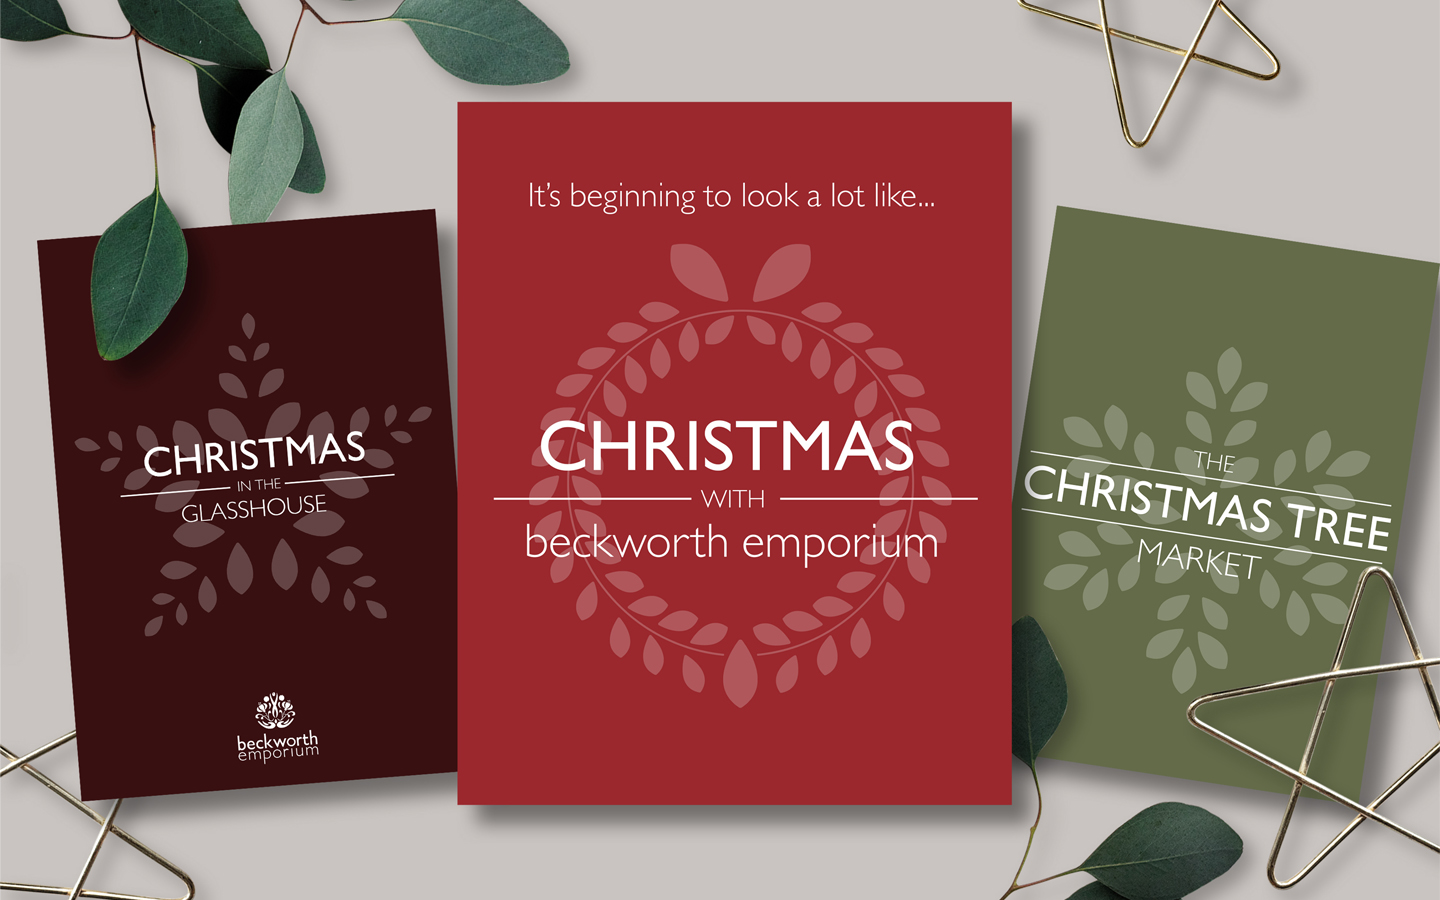 Beckworth Emporium Christmas Campaign